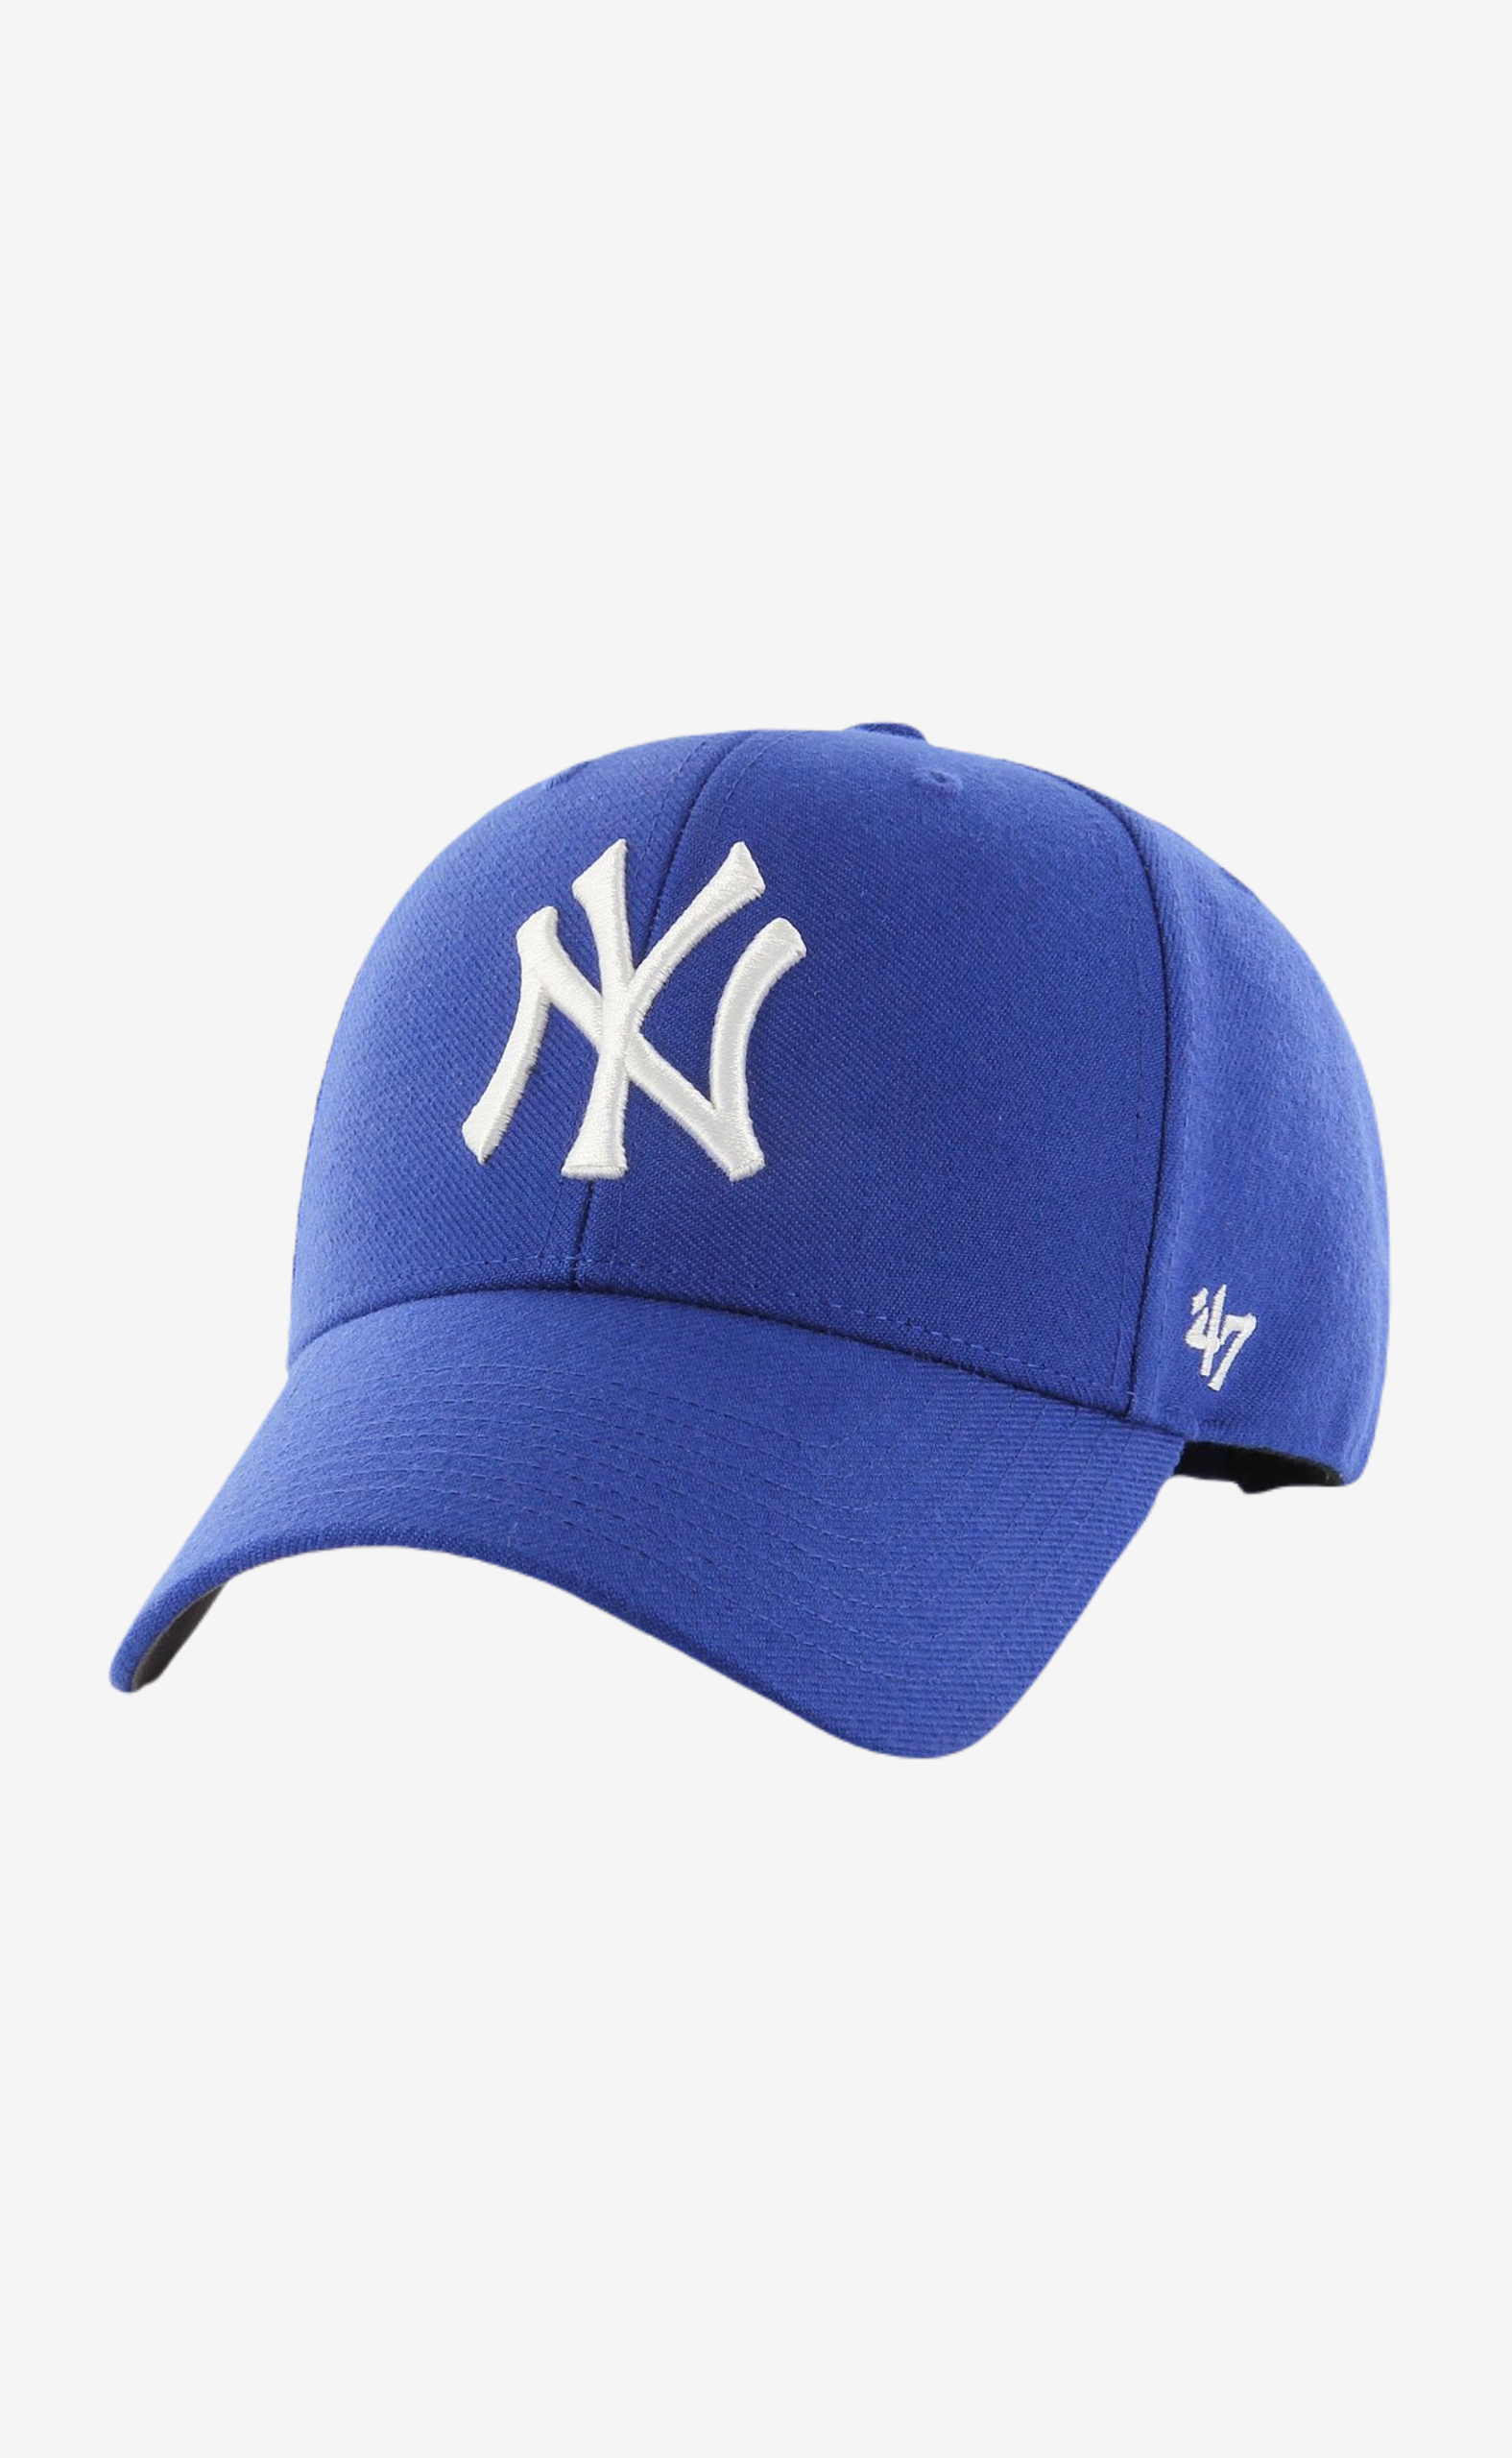 MLB NEW YORK YANKEES 47 MVP ROYAL HAT